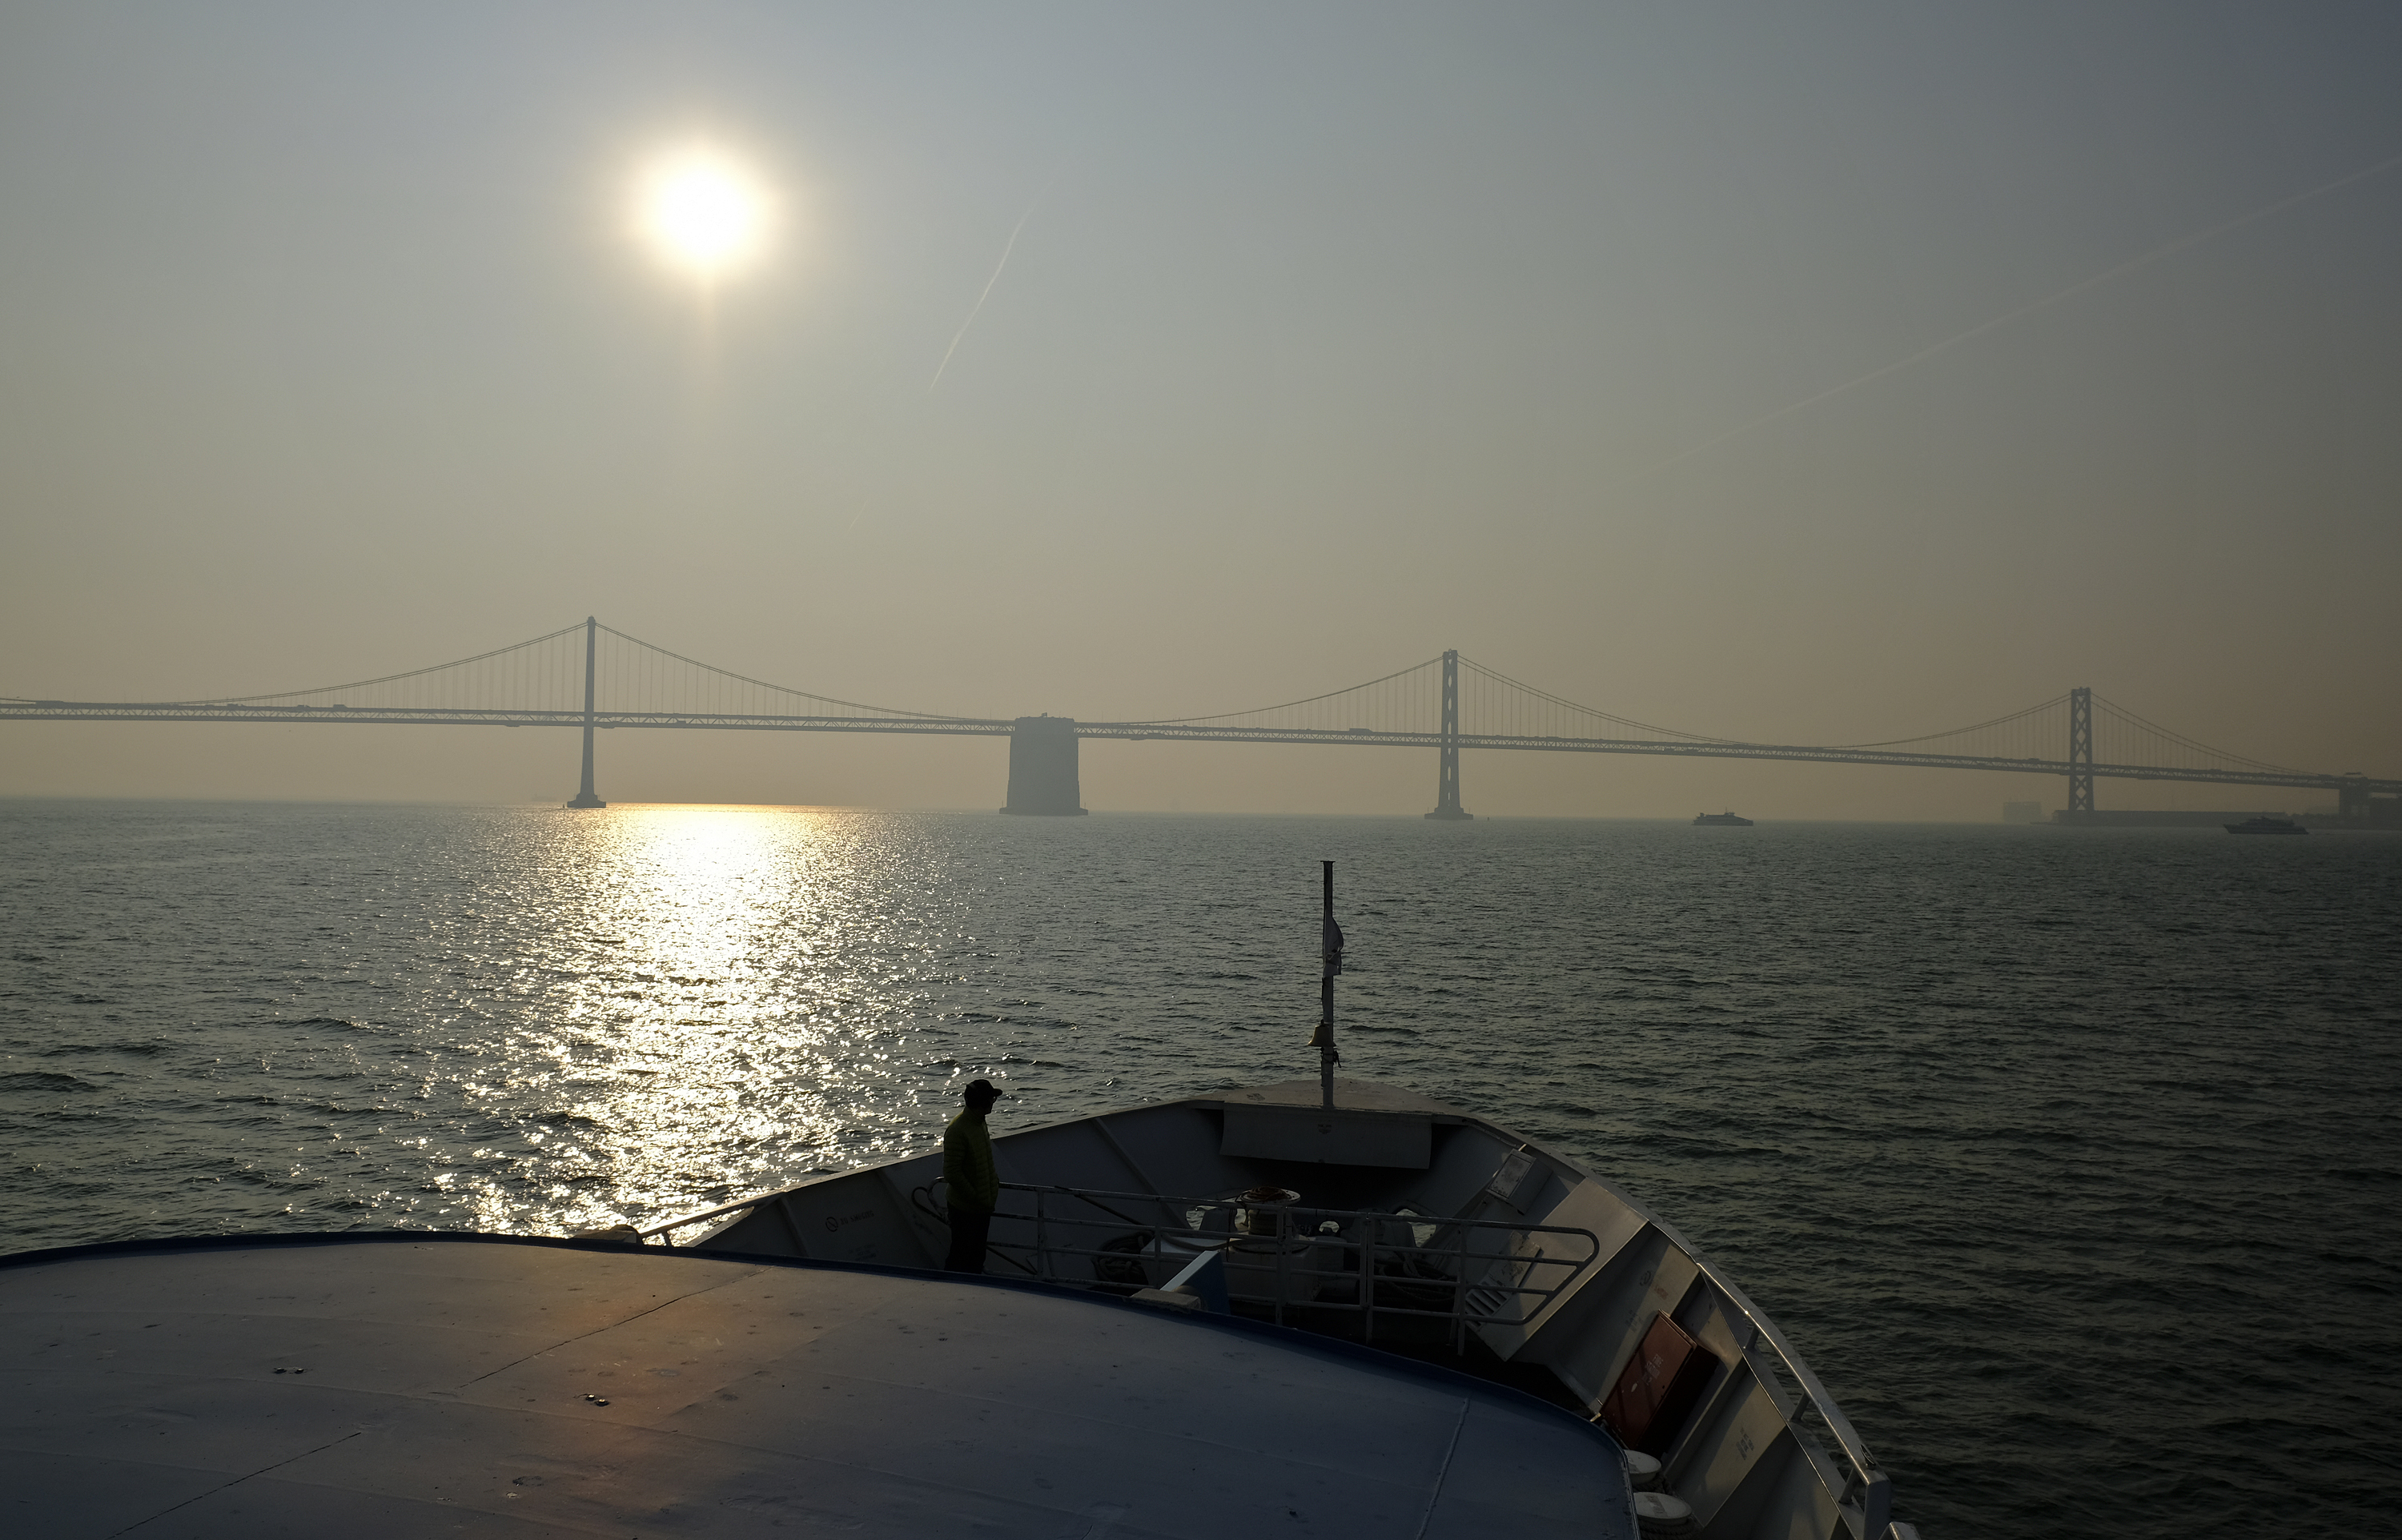 Residentes publicaron fotos en las redes sociales del famoso puente Golden Gate y San Francisco-Oakland Bay Bridge, difícilmente visibles en una atmósfera cargada de partículas